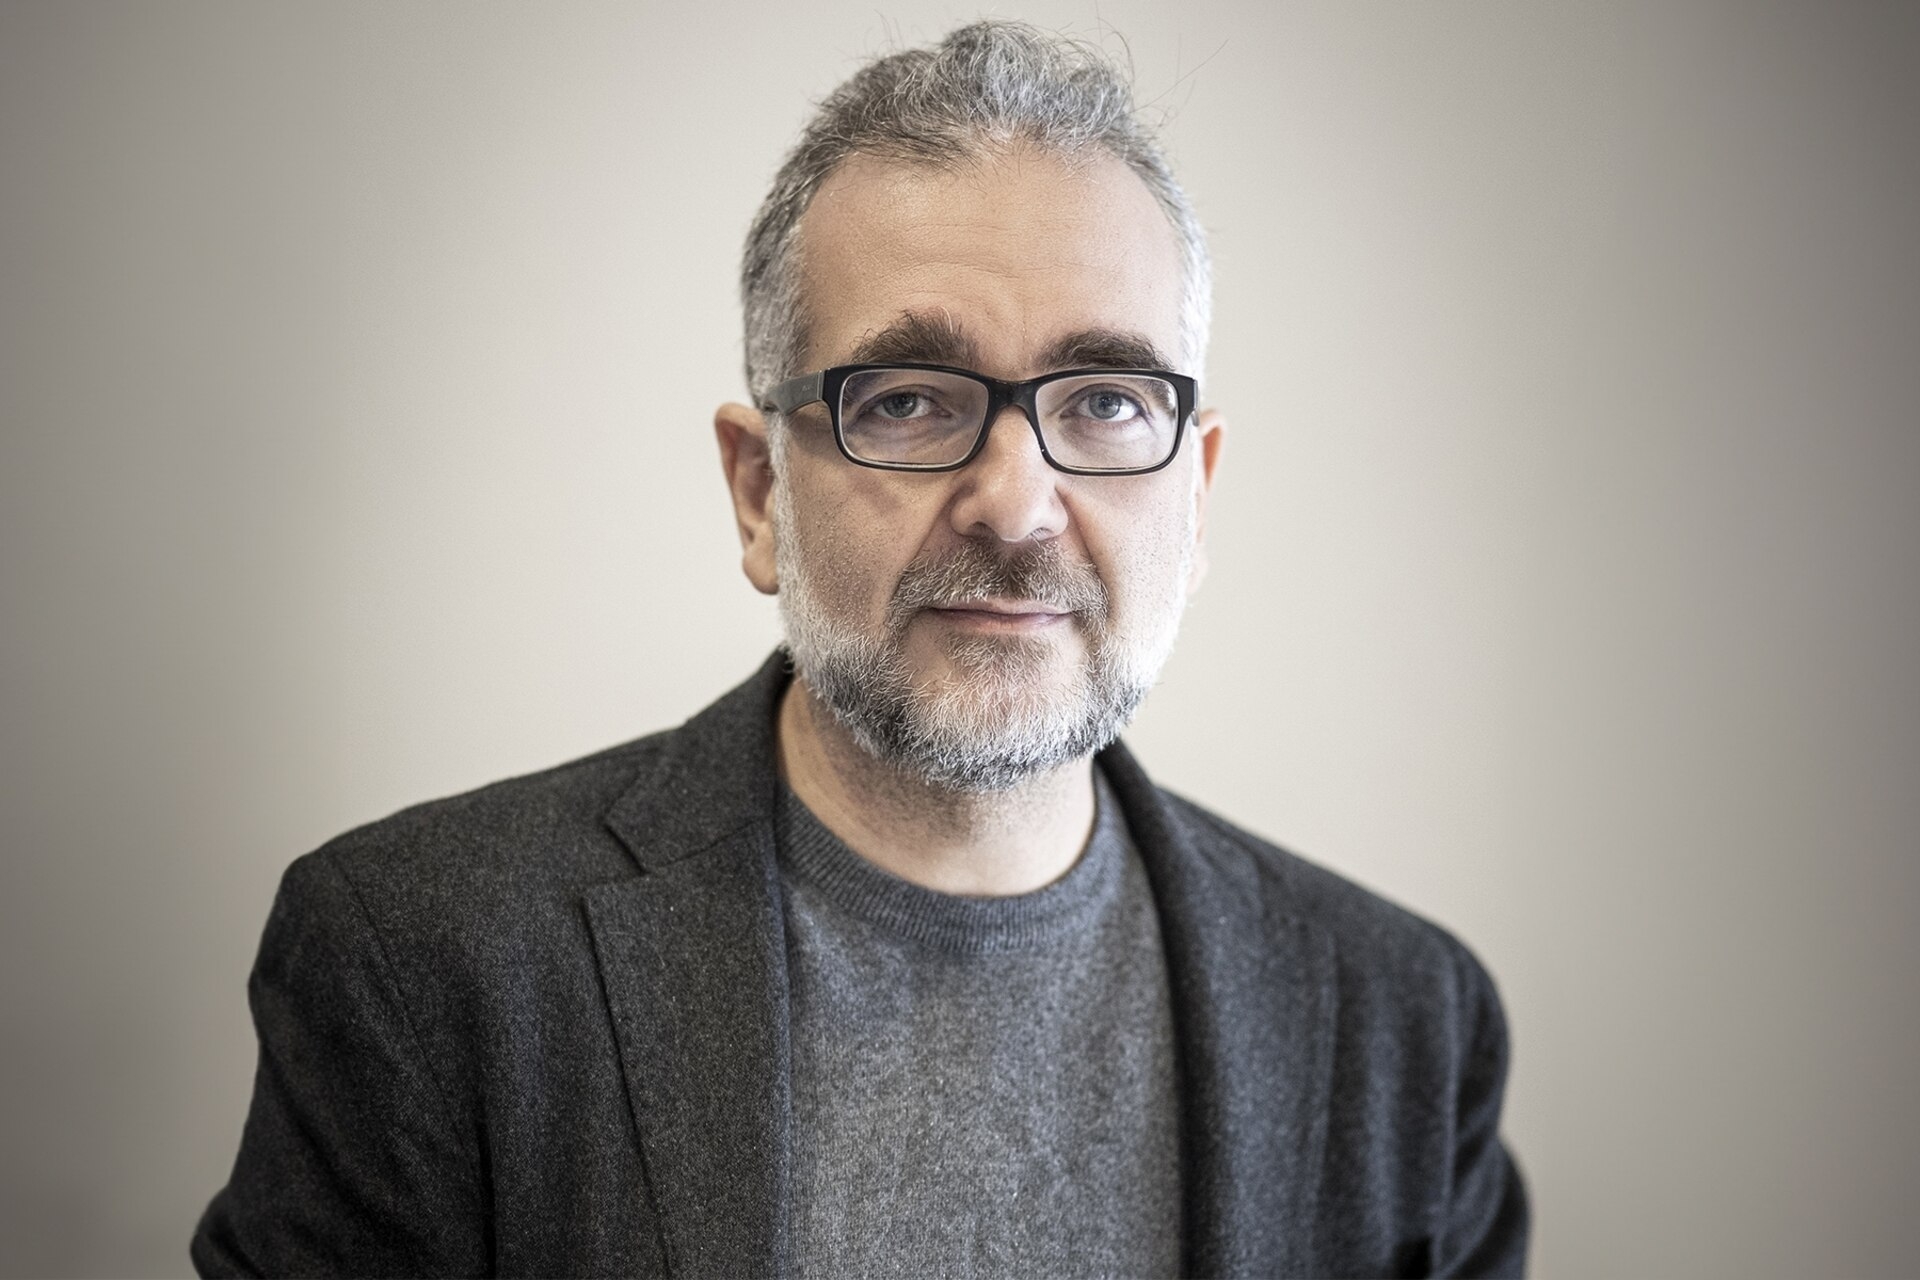 Stefano Epifani: Stefano Epifani este președintele Fundației pentru Sustenabilitate Digitală și profesor la acest subiect la Universitatea din Pavia